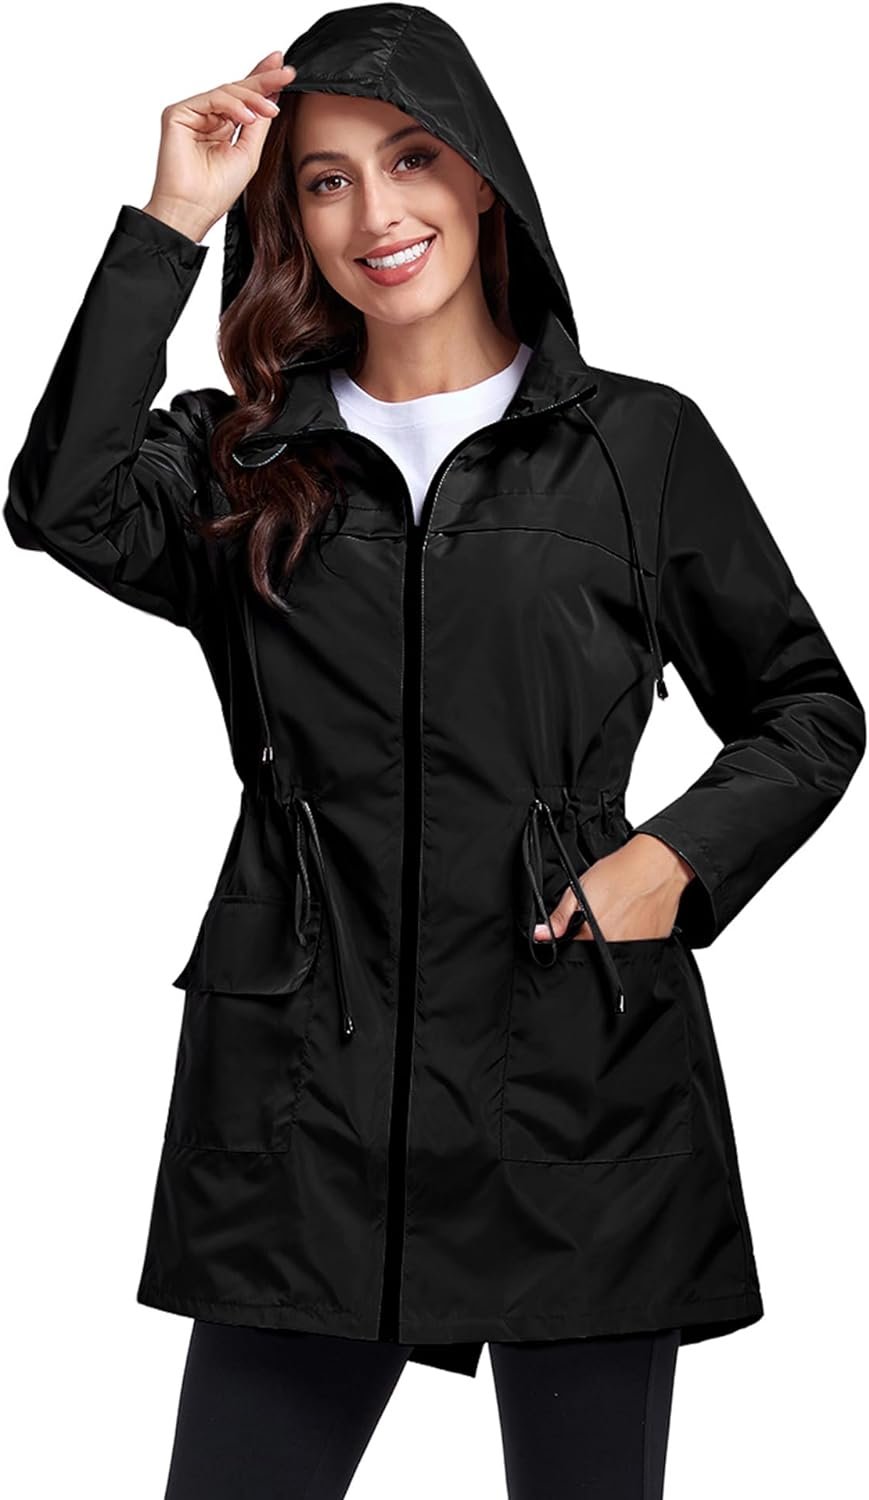 Women Waterproof Raincoat Lightweight Packable Active Outdoor Long Hooded Rain Jacket